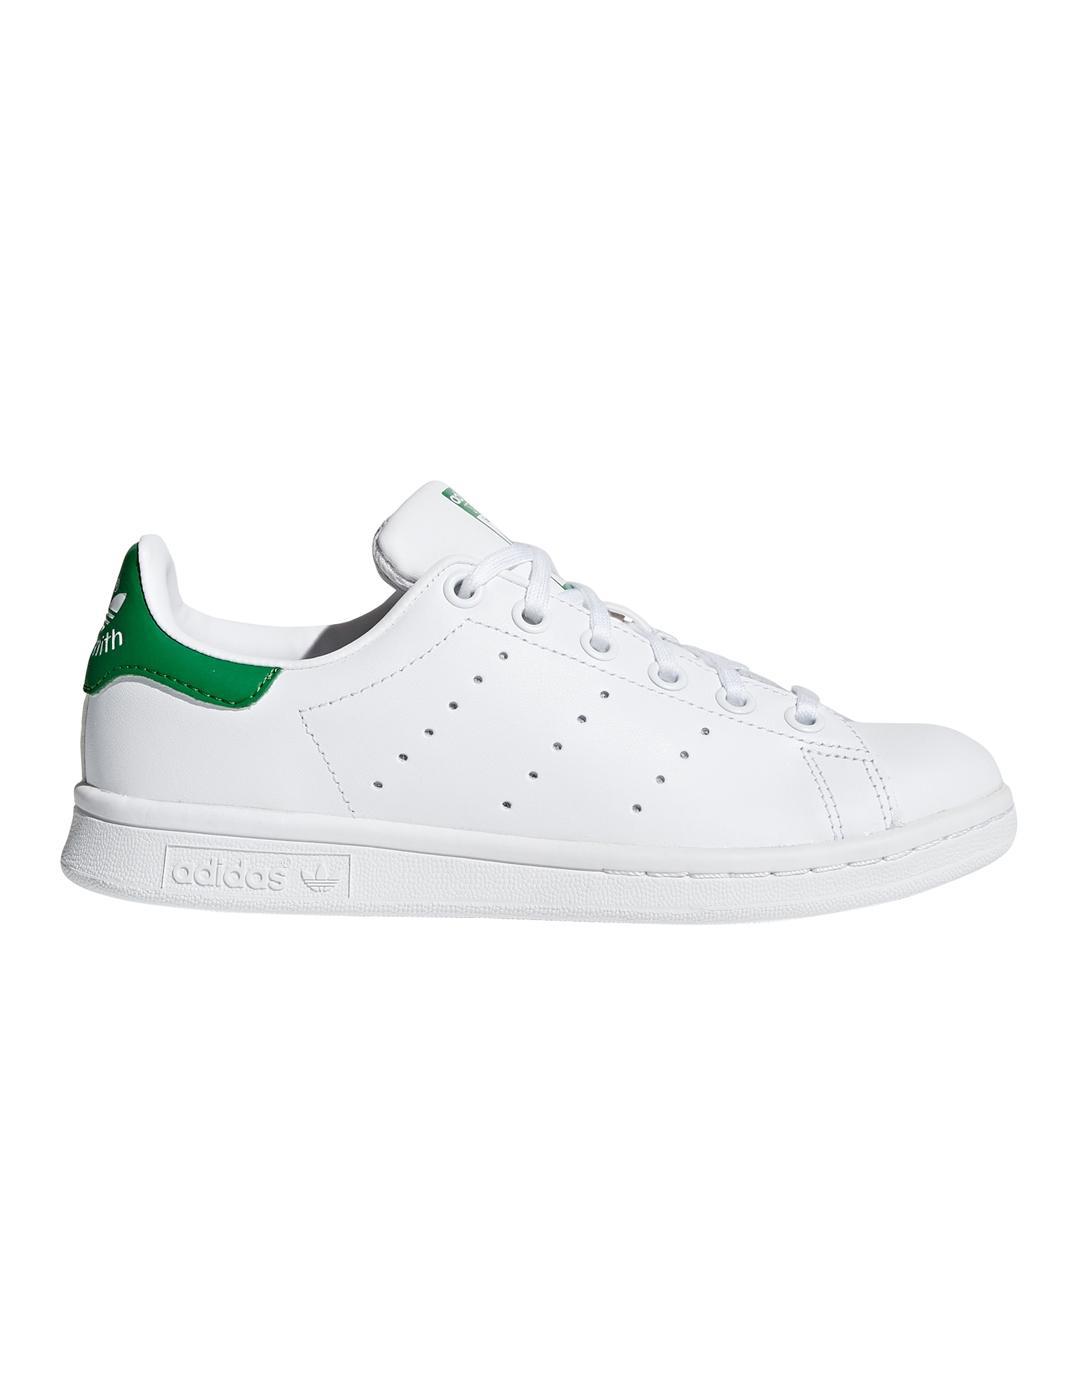 Adidas Smith Junior Blanco/Verde